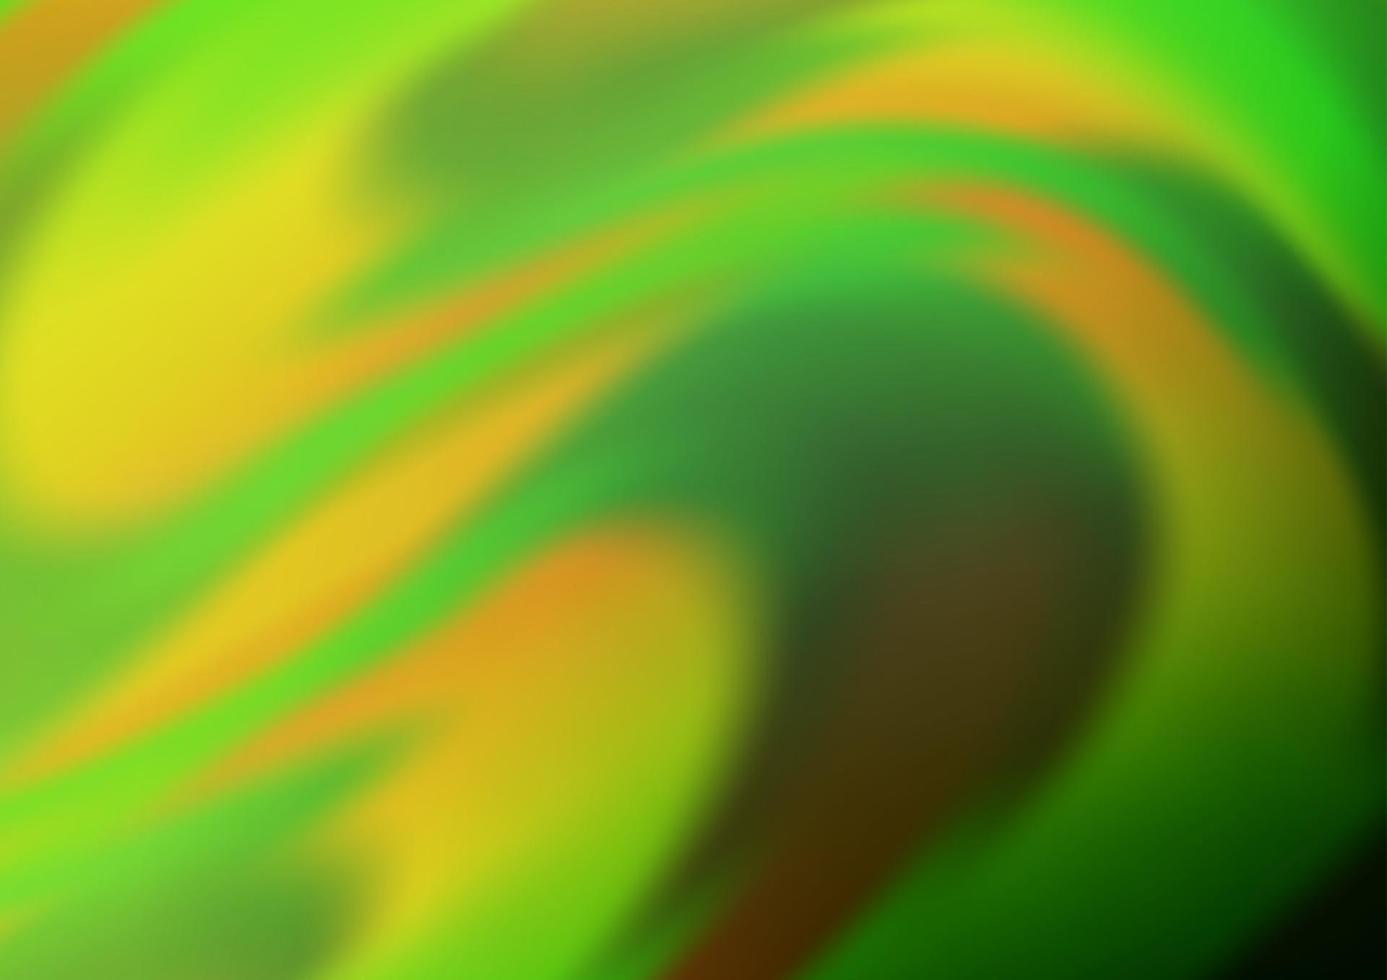 ljusgrön, gul vektorbakgrund med böjda band. vektor